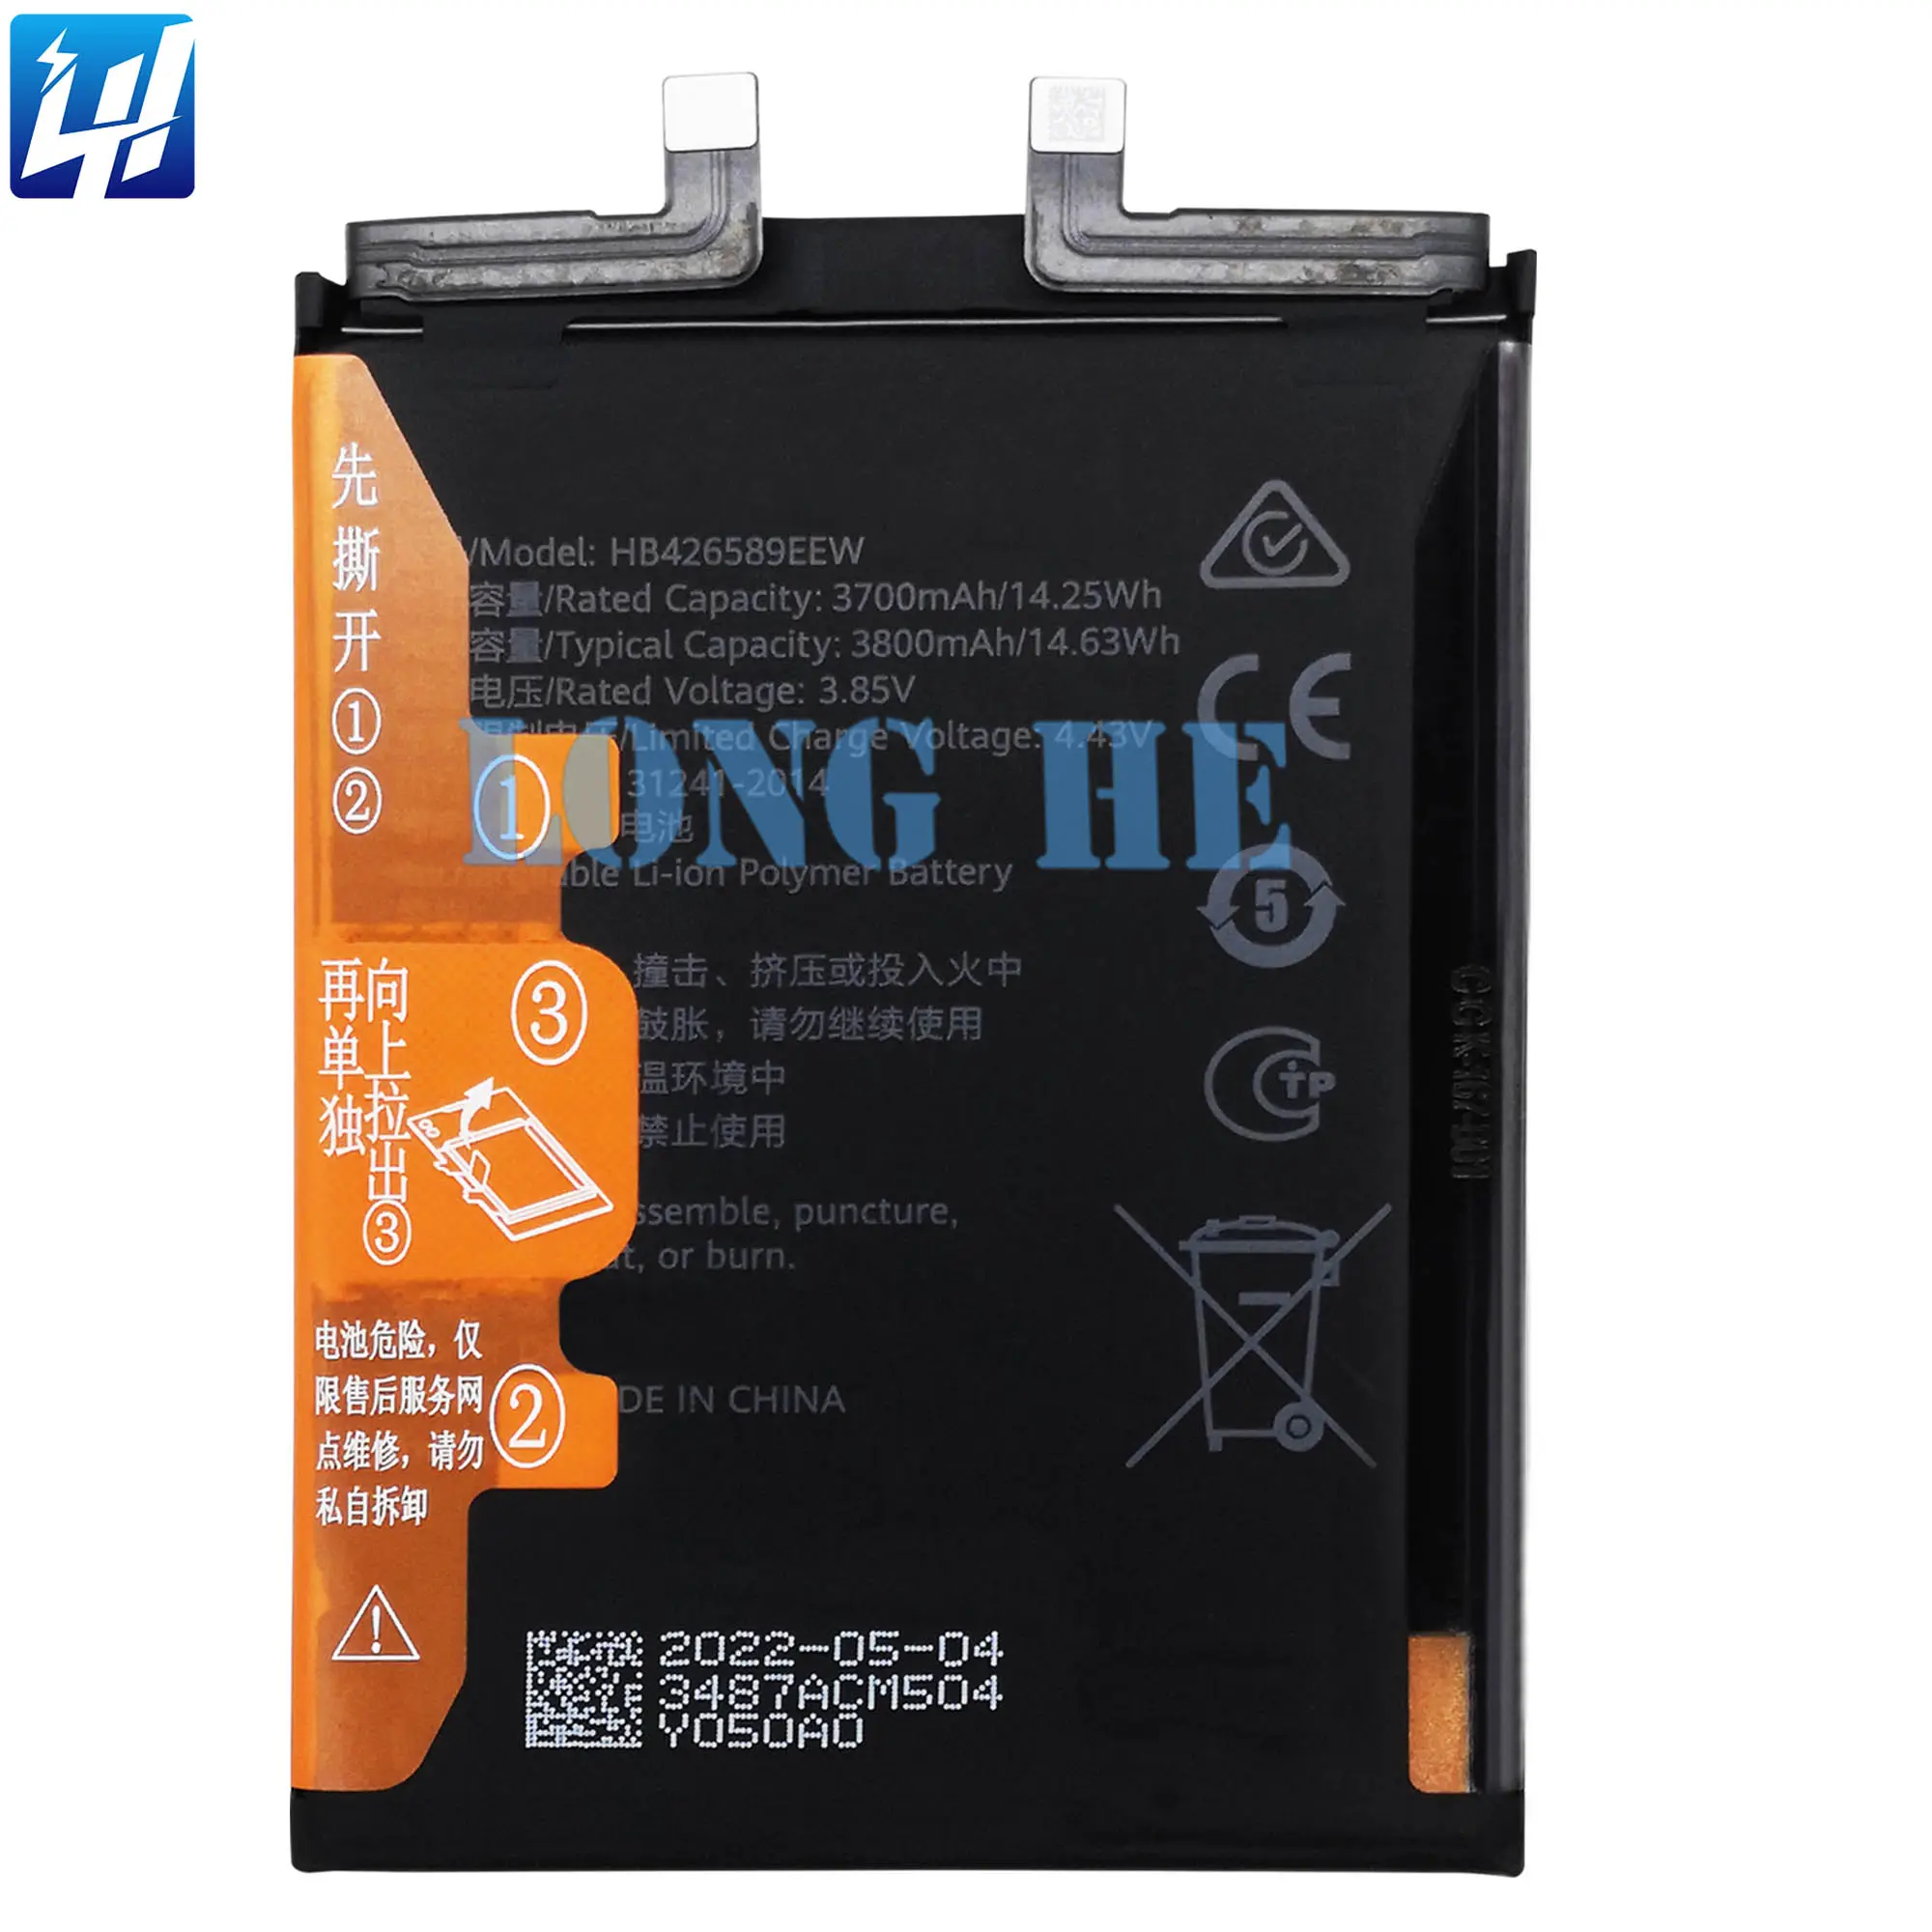 Batteria ricaricabile originale agli ioni di litio Polyer per telefono cellulare per Nova 8 per sostituzione Huawei ANG-LX2 ANG-LO2B ANG-L21B